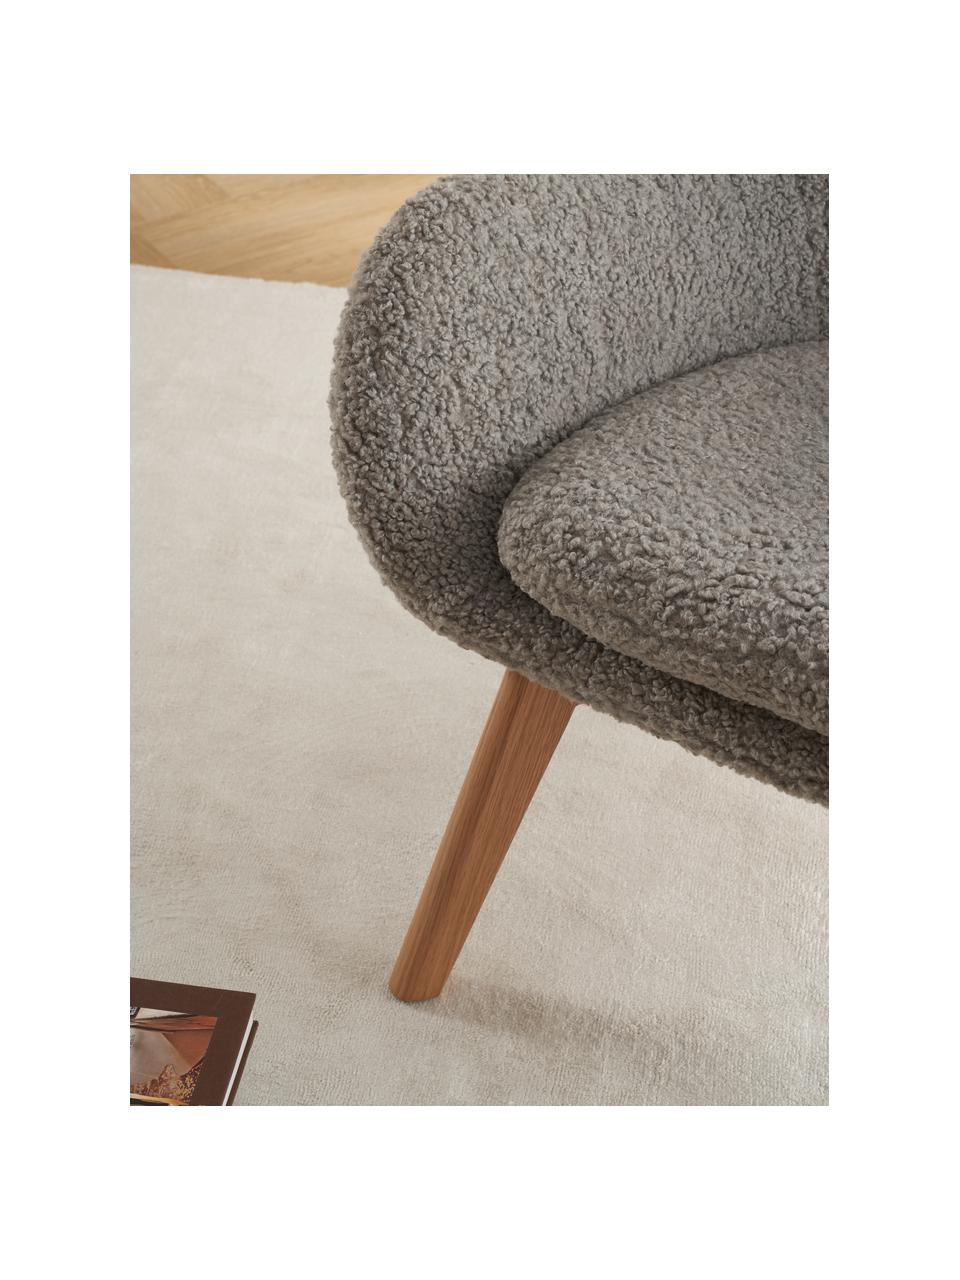 Teddy fauteuil Wing in grijs met houten poten, Poten: metaal, gepoedercoat, Teddy grijs, B 77 x D 89 cm